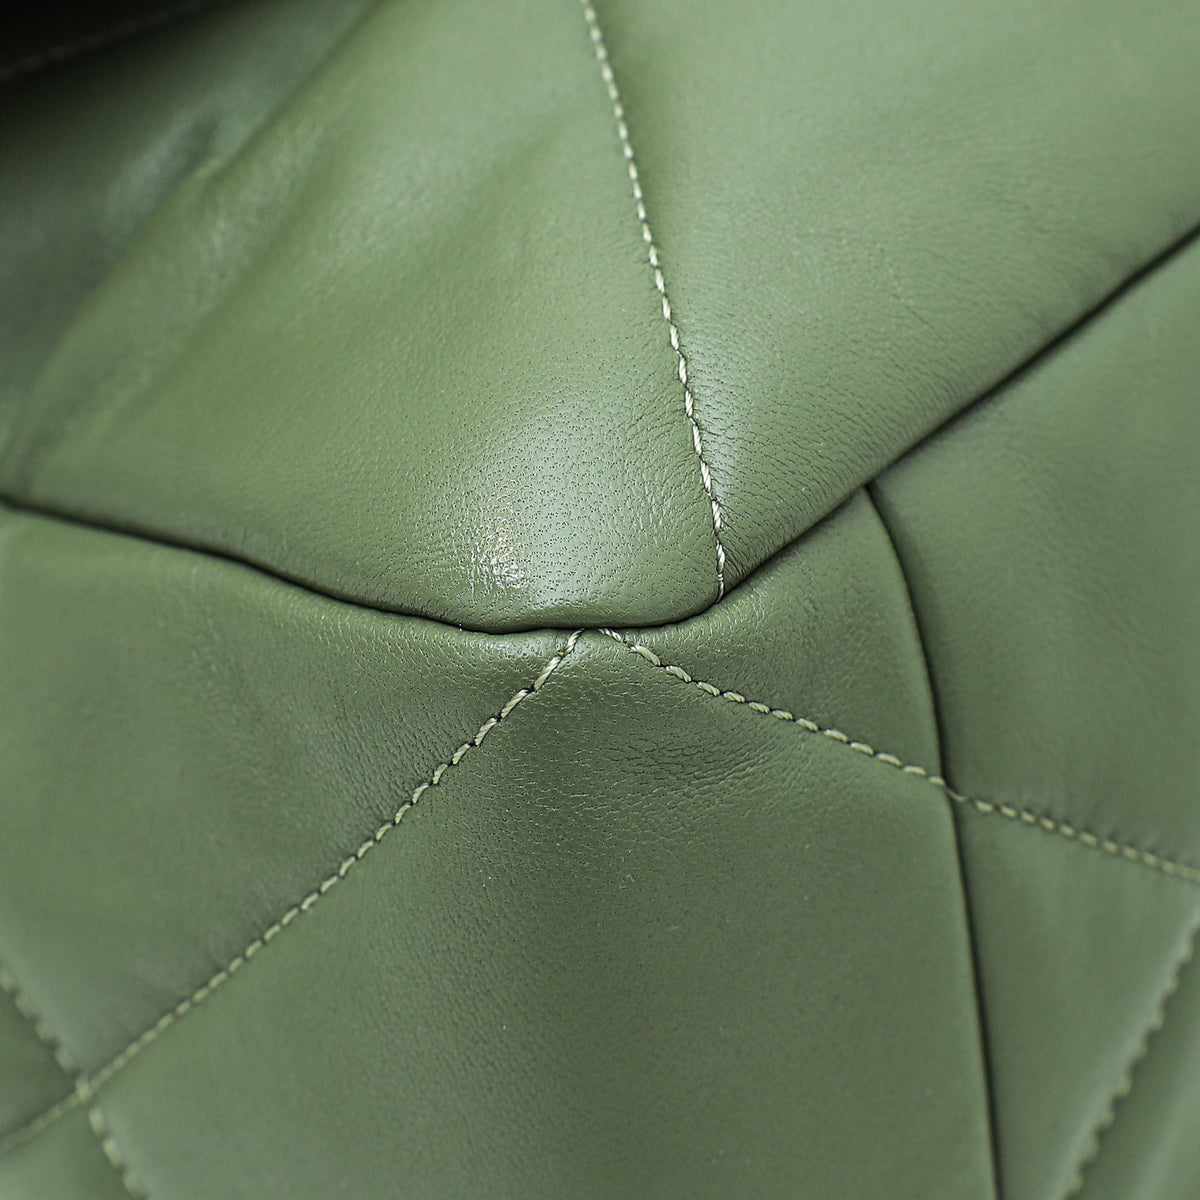 Chanel Light Moss Green 19 Maxi Flap Bag